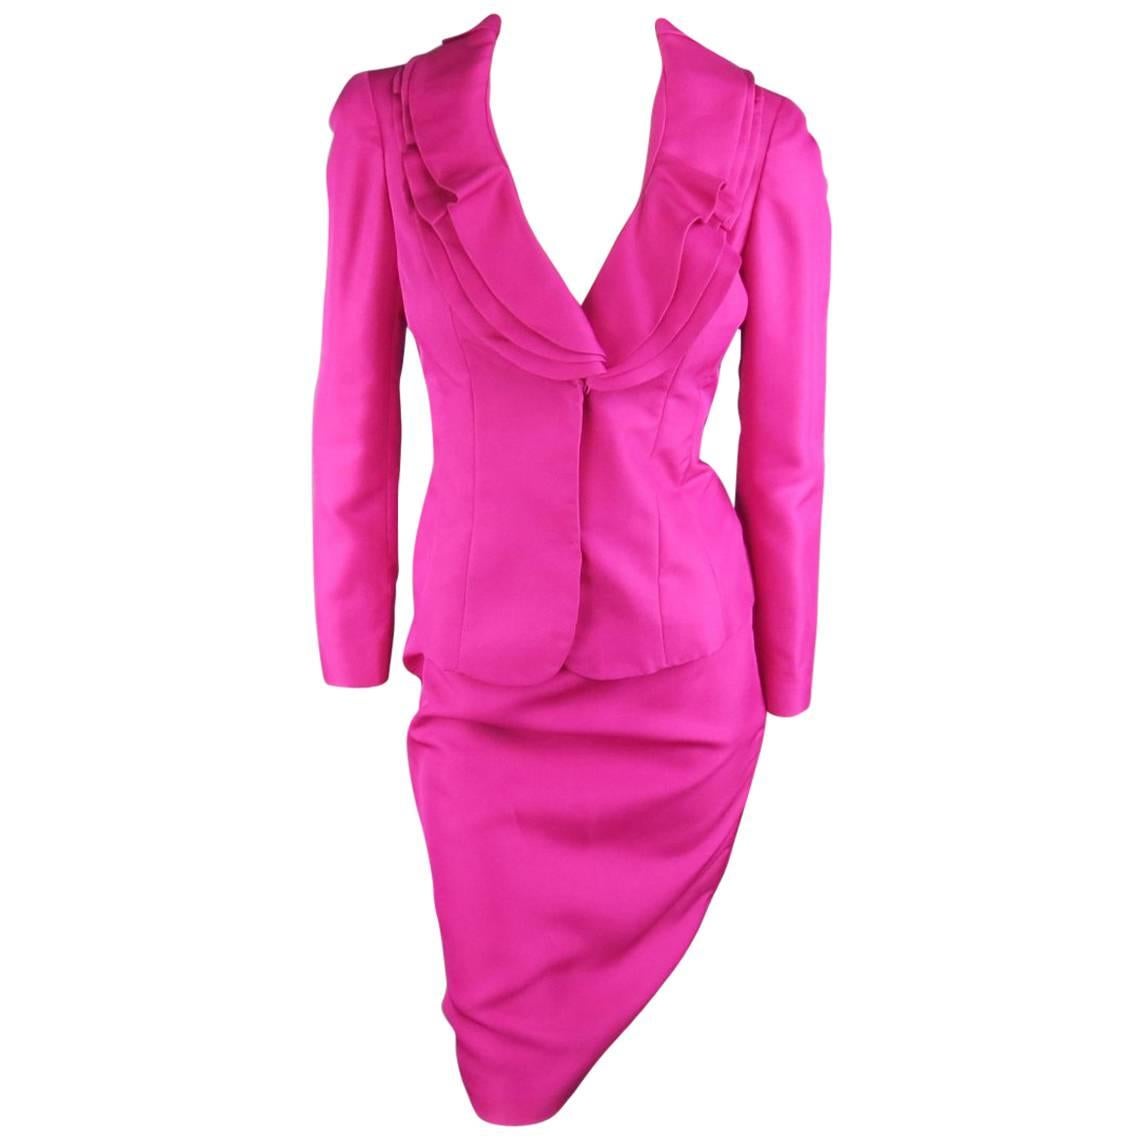 VALENTINO Size 4 Fuchsia Textured Silk Taffeta Ruffled Collar Jacket Skirt Suit